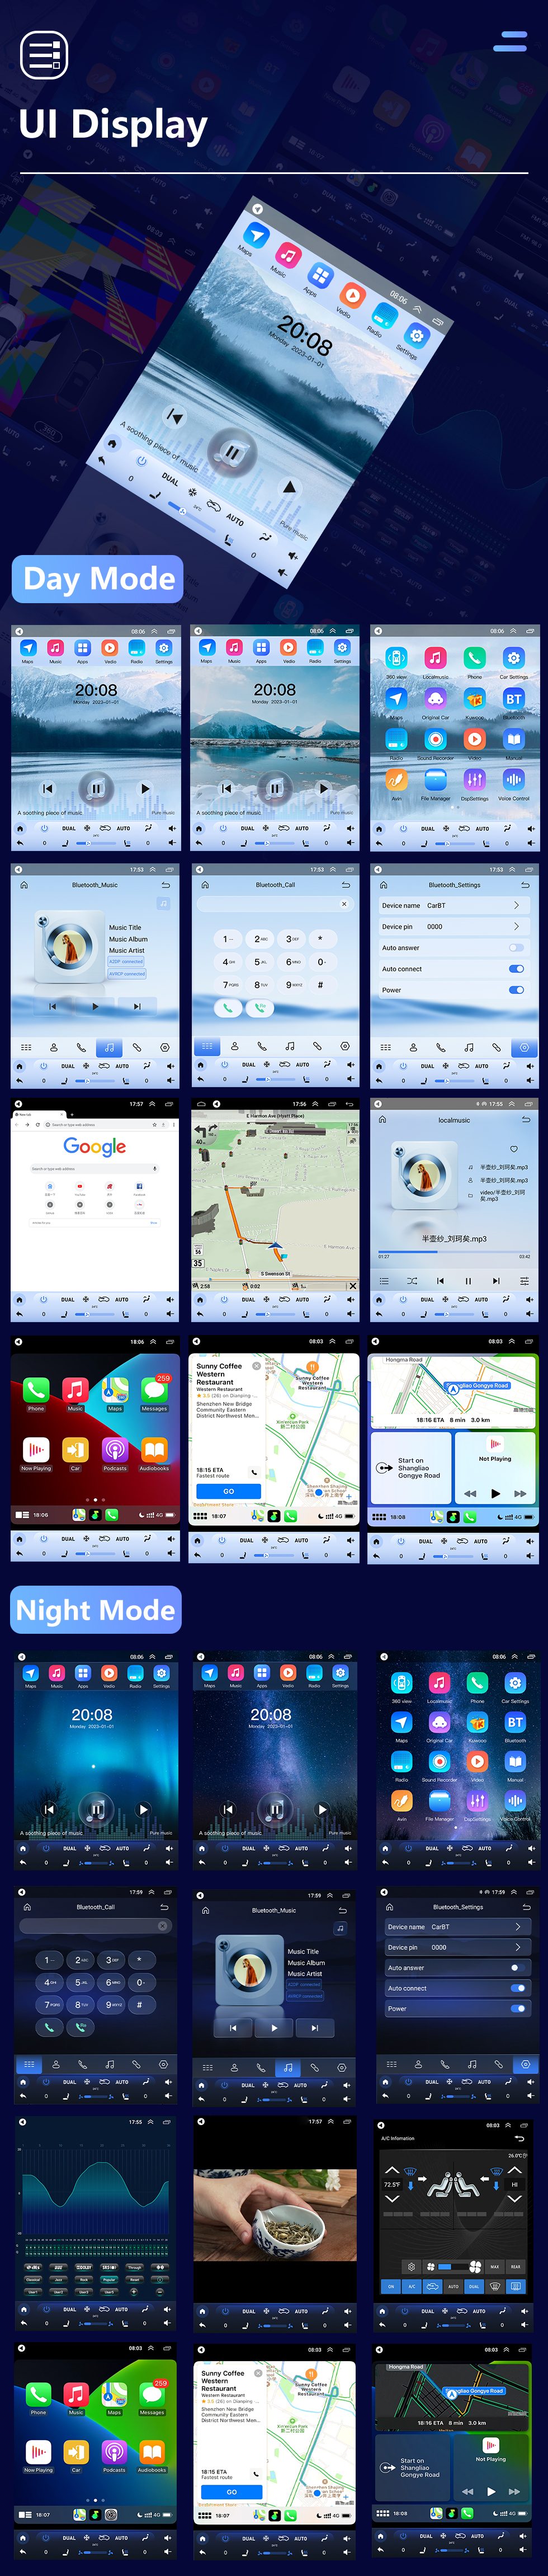 Seicane Radio OEM Android 10.0 pour Citroen Quatre 2012-2016 （Bas）Bluetooth Wifi avec écran tactile HD 9,7 pouces Navigation GPS Prise en charge USB AUX Carplay DVR OBD2